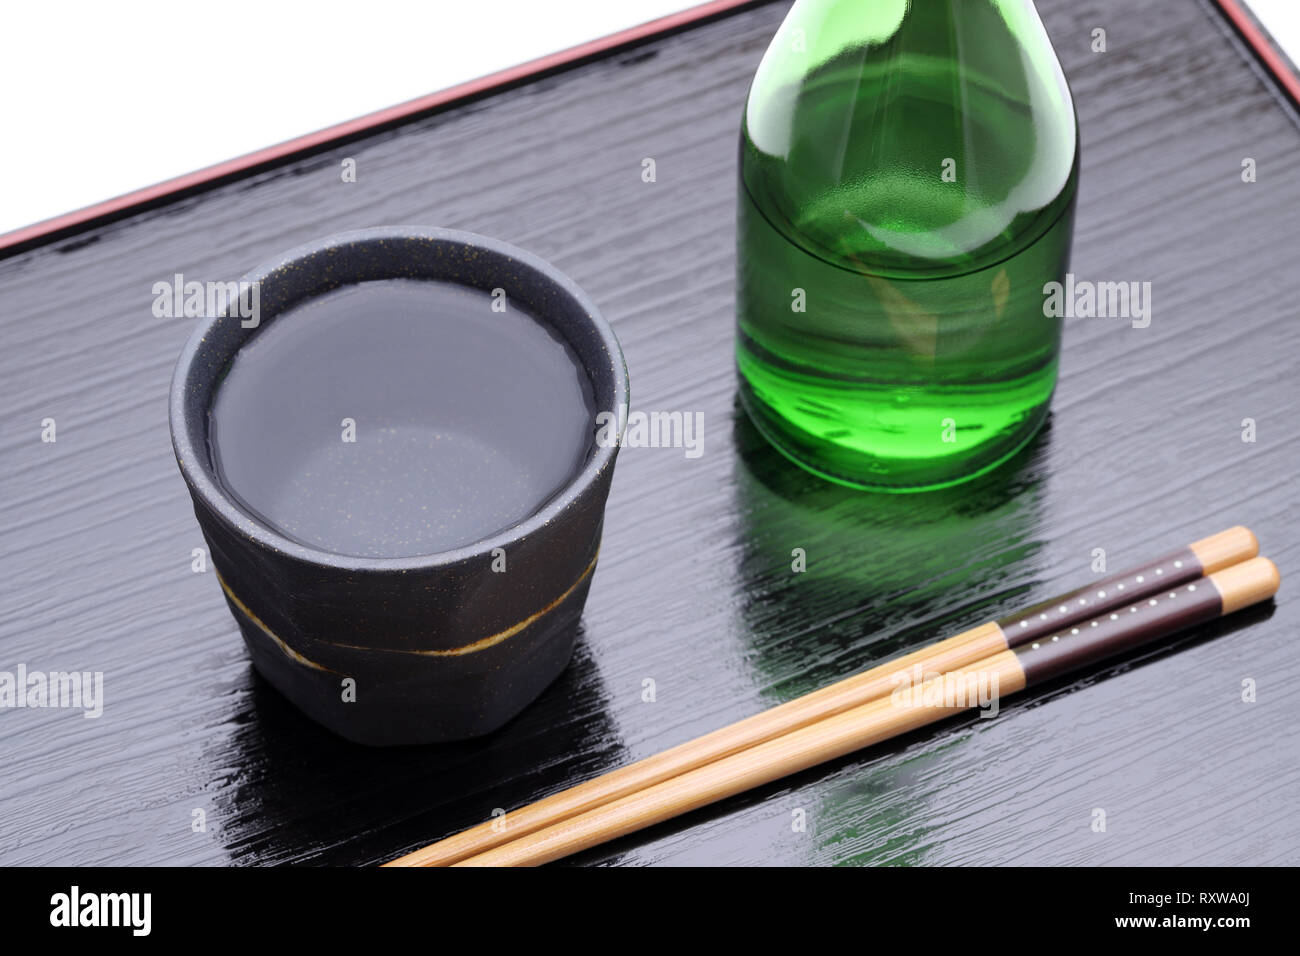 Bottiglia di giapponese shochu e vaso di ceramica sul vassoio in legno, su sfondo bianco Foto Stock